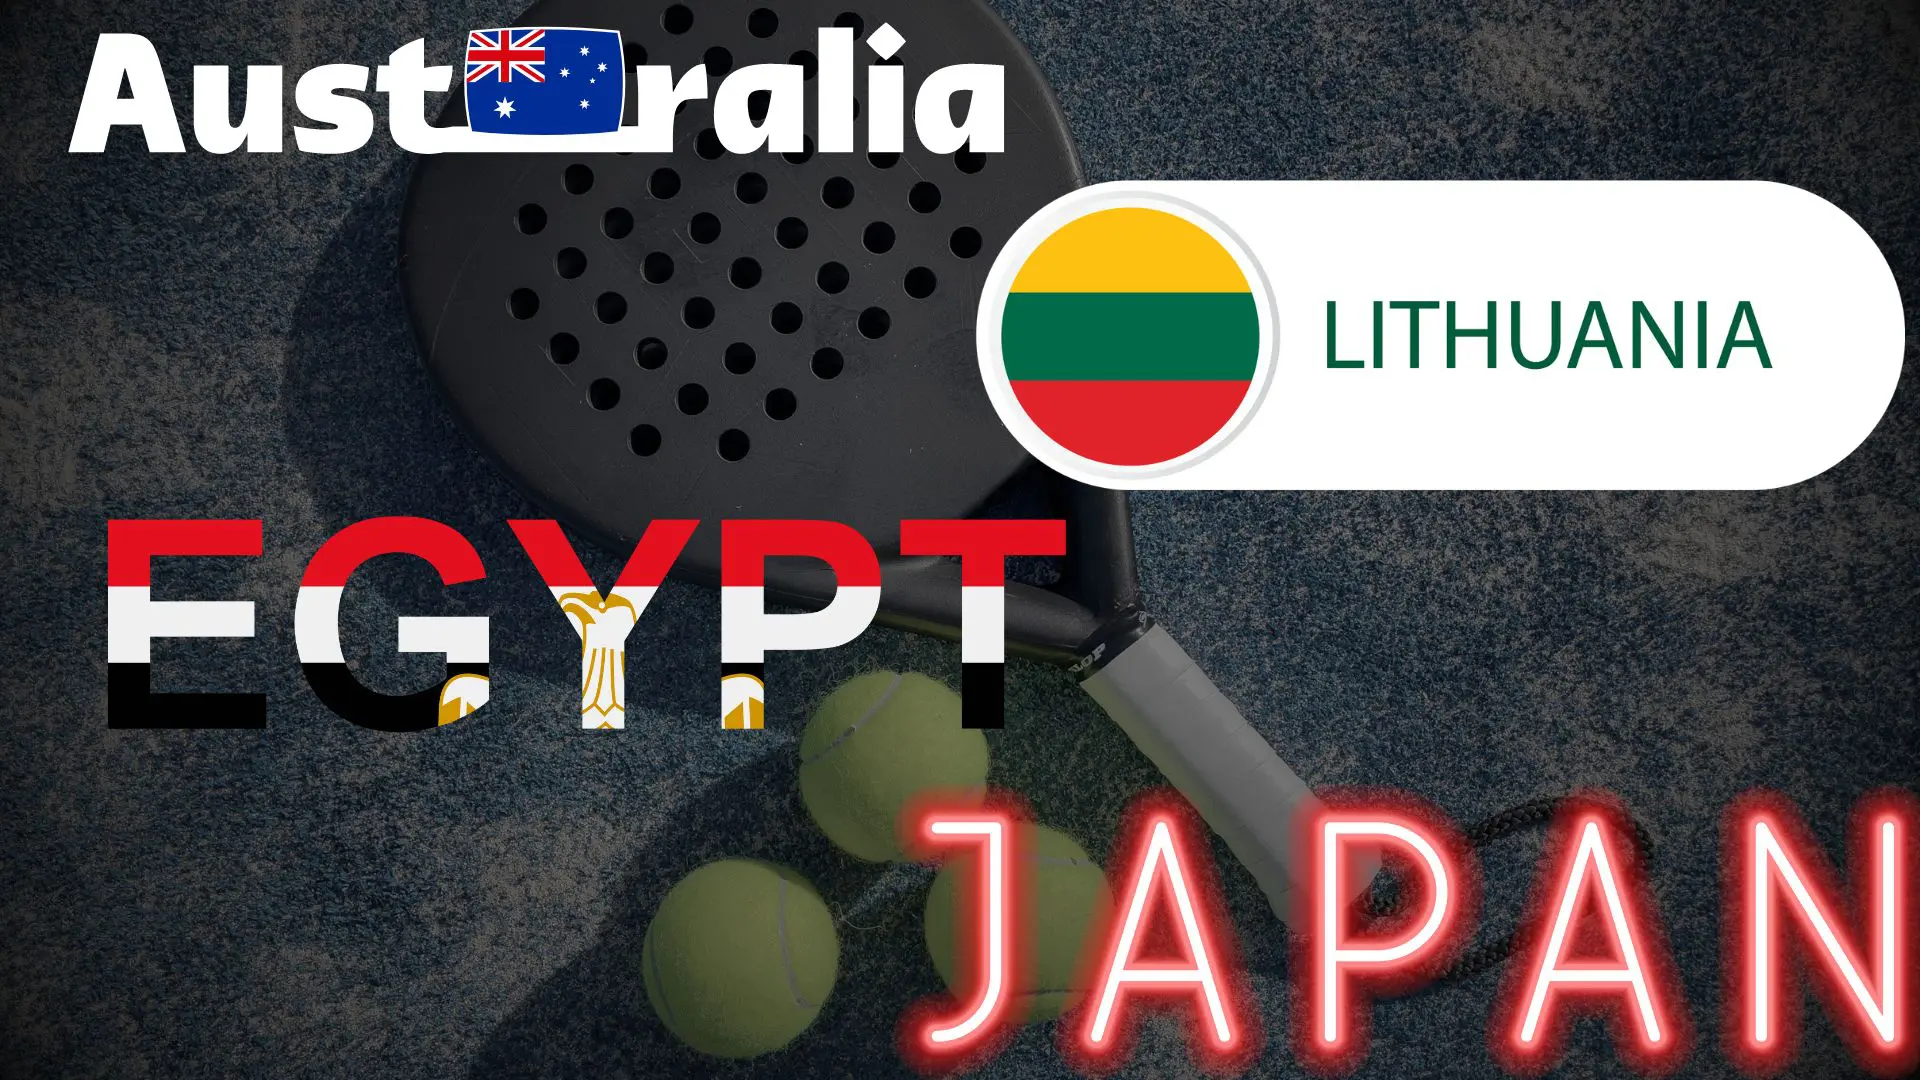 australia lutania egypt japan fip tour